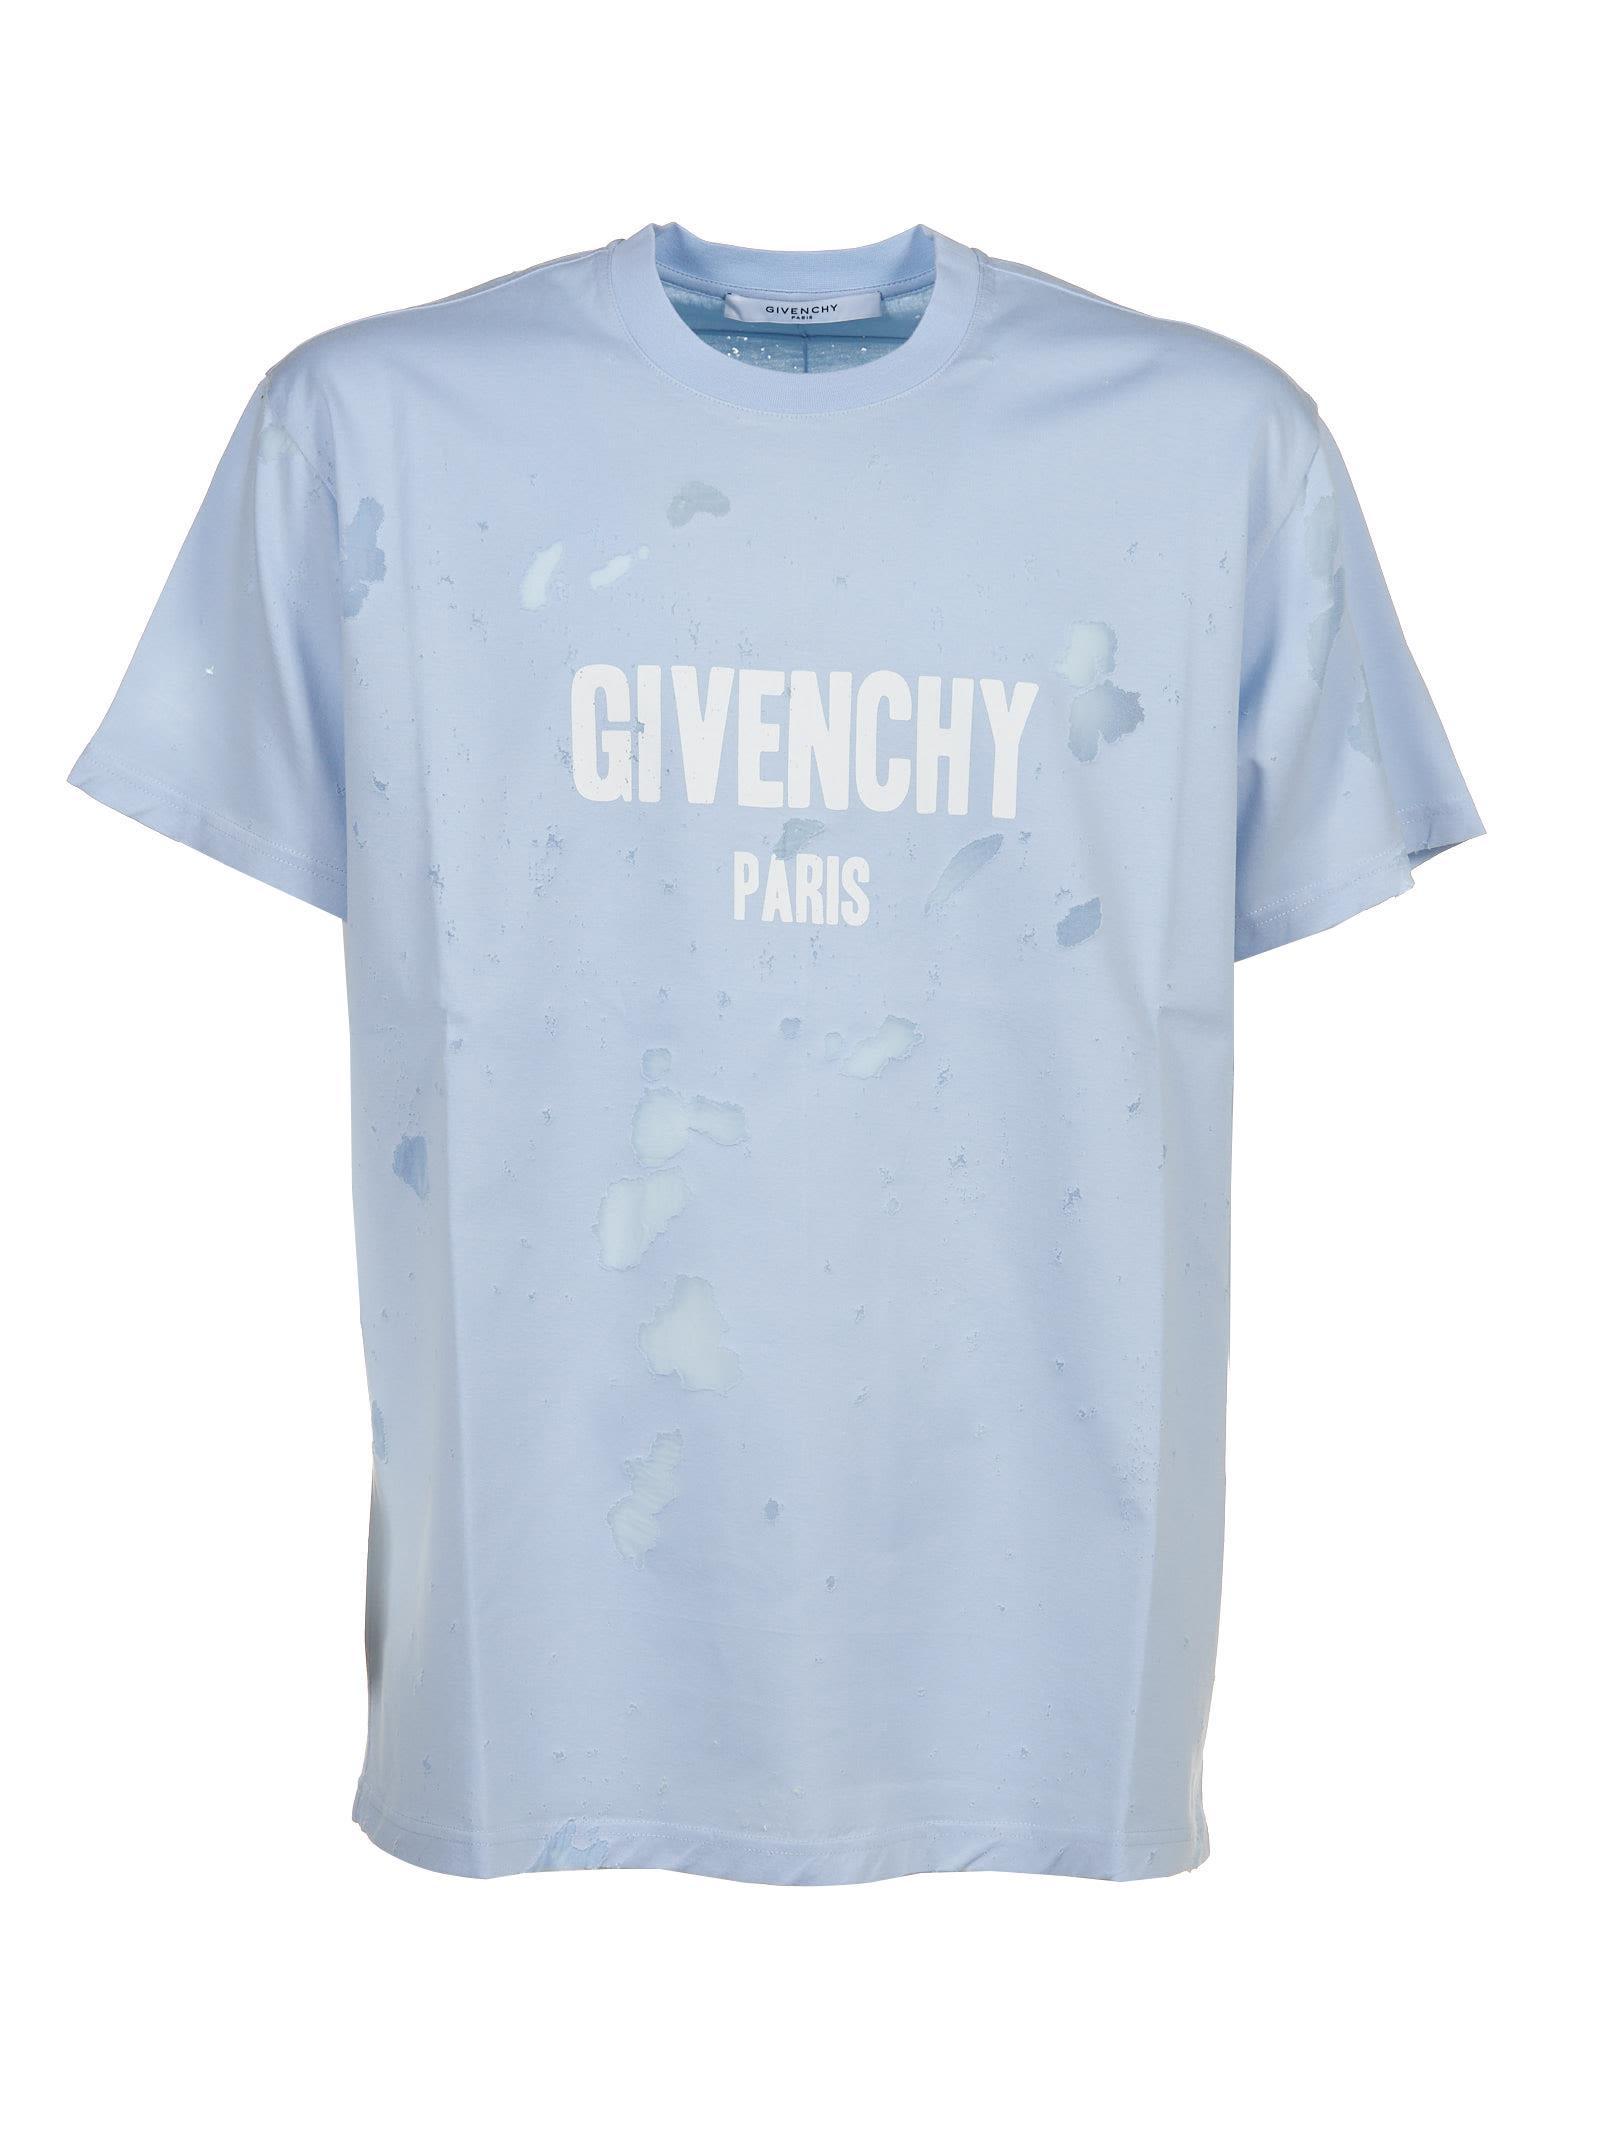 givenchy t shirt 2018